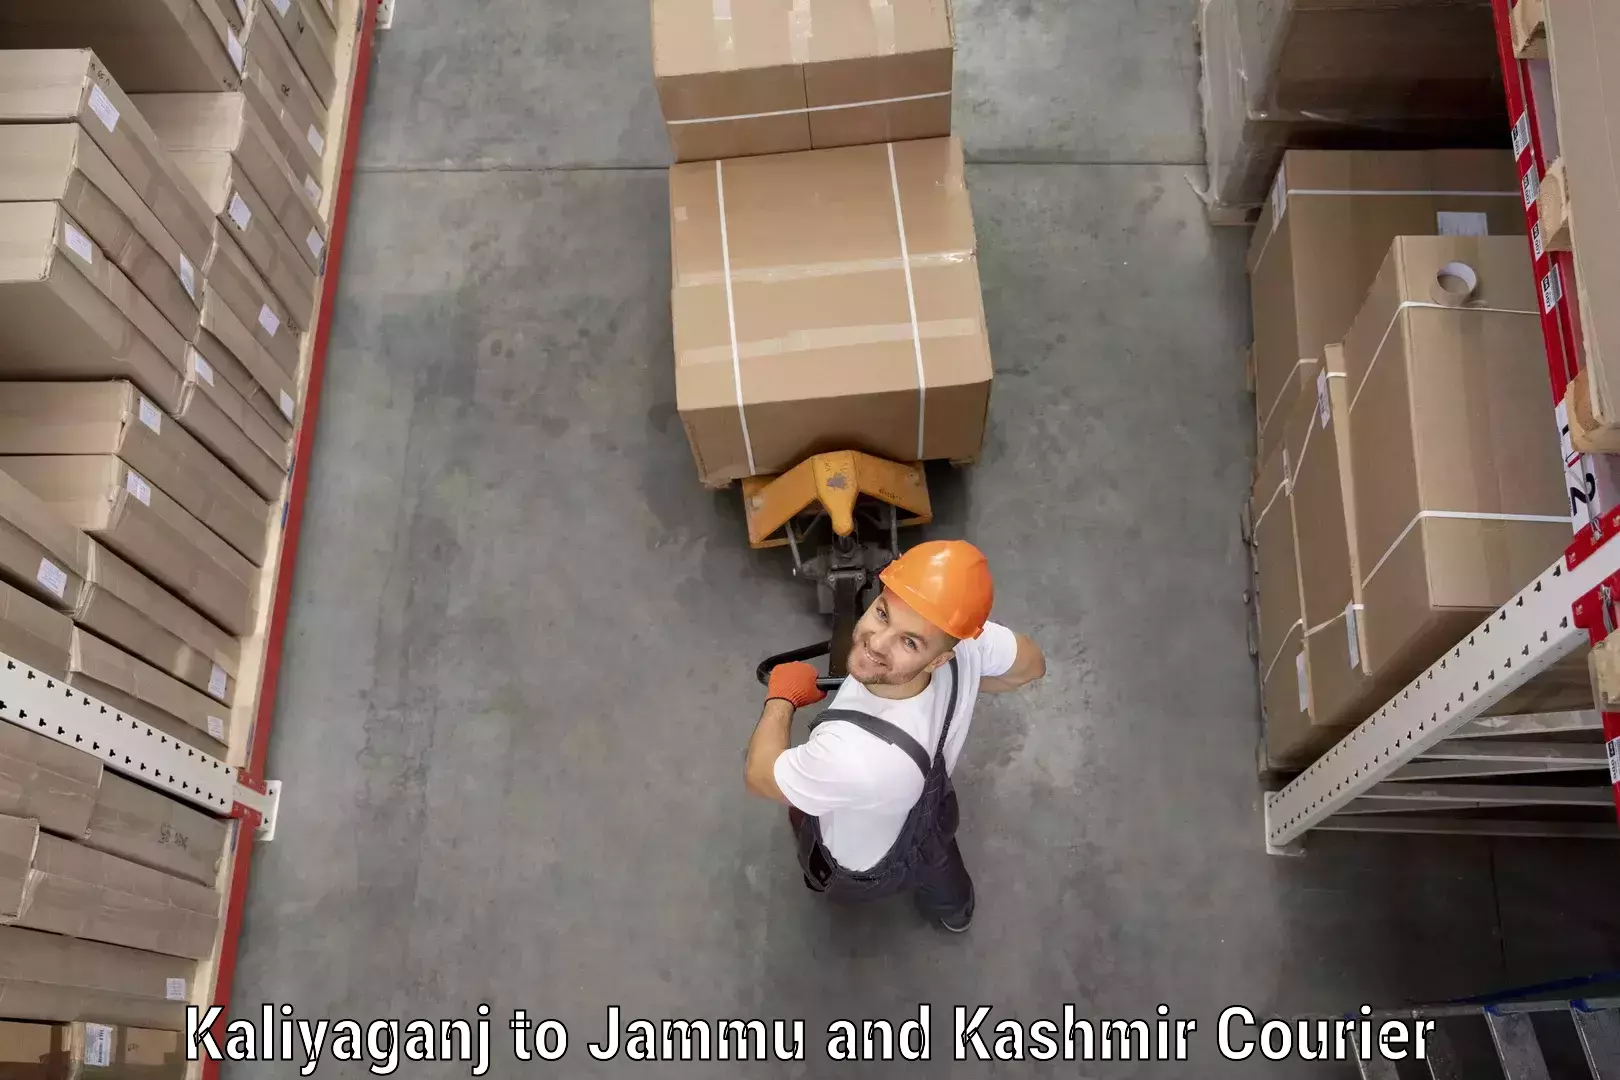 Global parcel delivery Kaliyaganj to Kargil